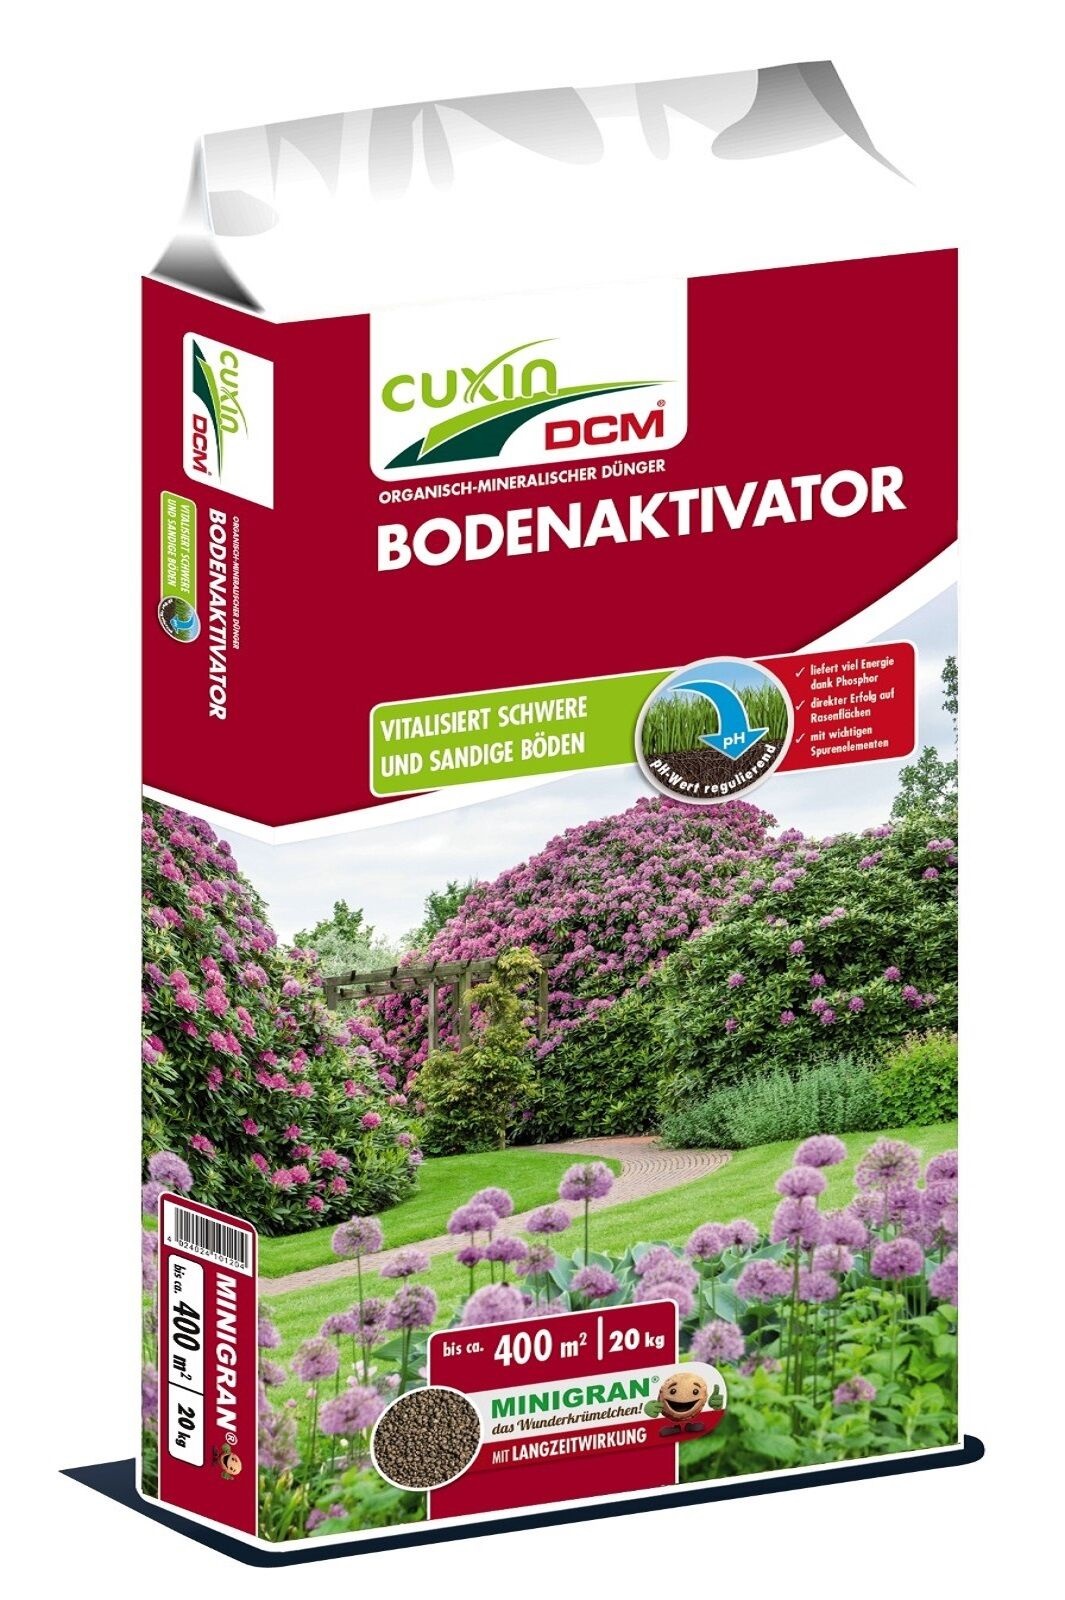 Cuxin DCM Bodenaktivator  minigran Gartendünger mit Urgesteinsmehl 20 kg